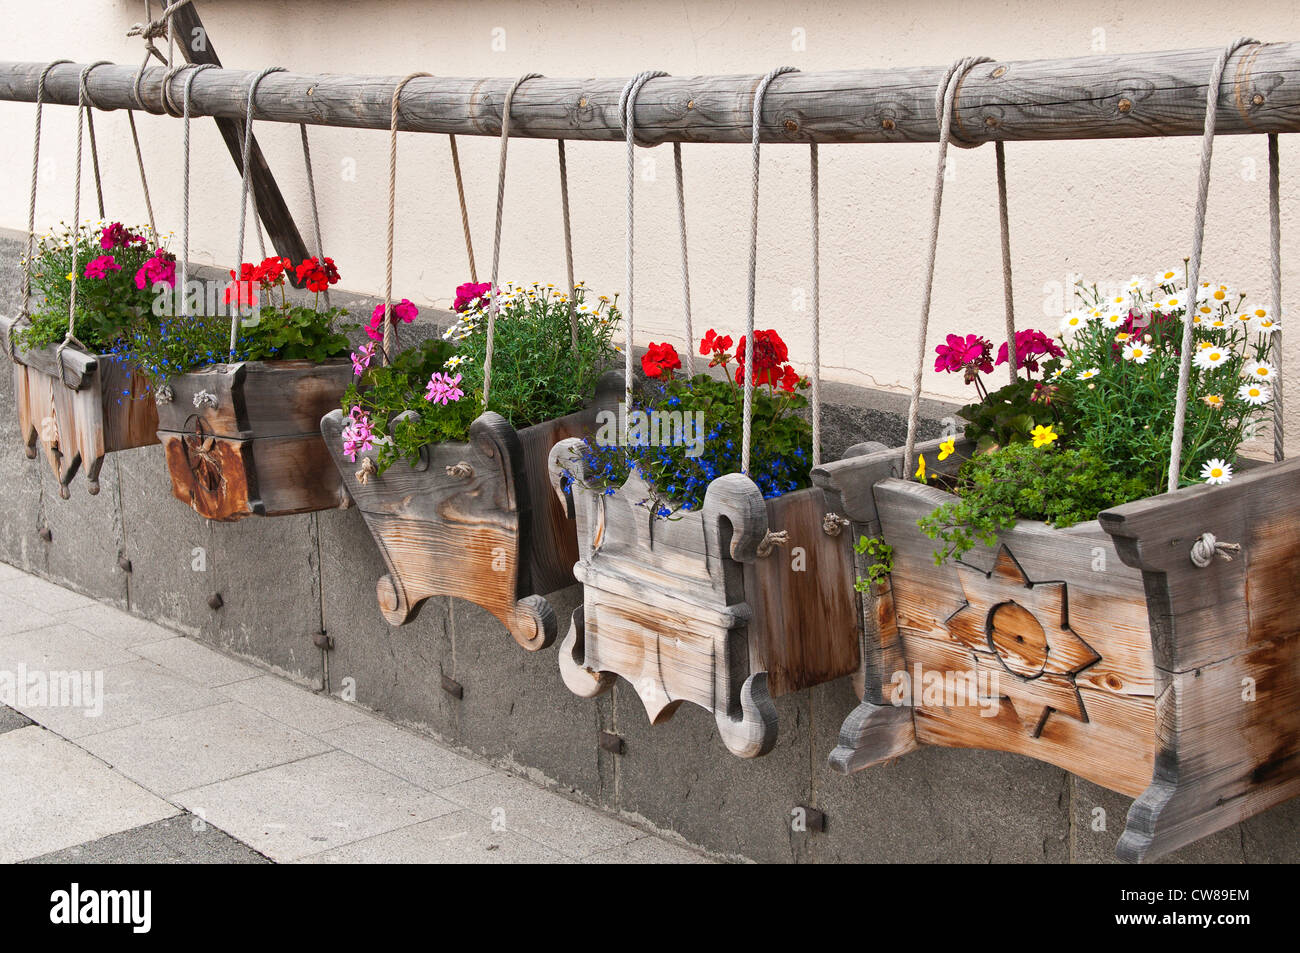 Swiss Flower Boxes Stockfotos und -bilder Kaufen - Alamy